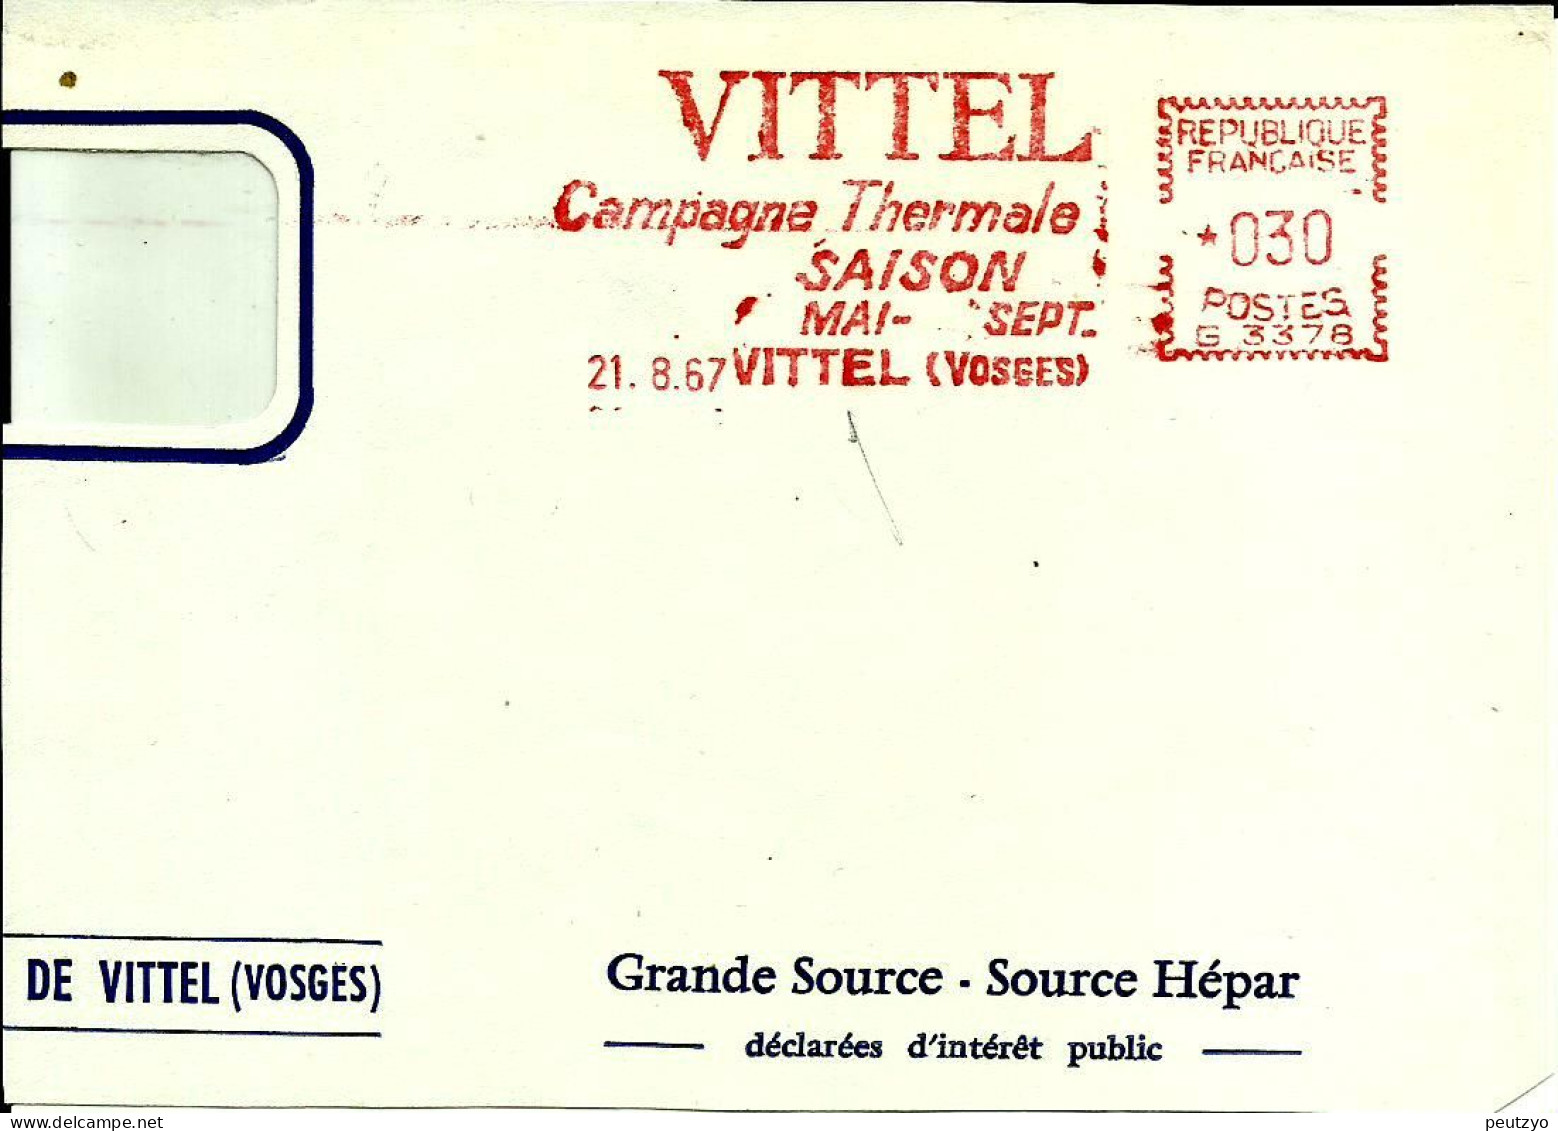 Ema Havas G 1967 Vittel Campagne Thermale Saison Boissons Eau Metier Industrie Cure 88 Vosges C29/54 - Thermalisme